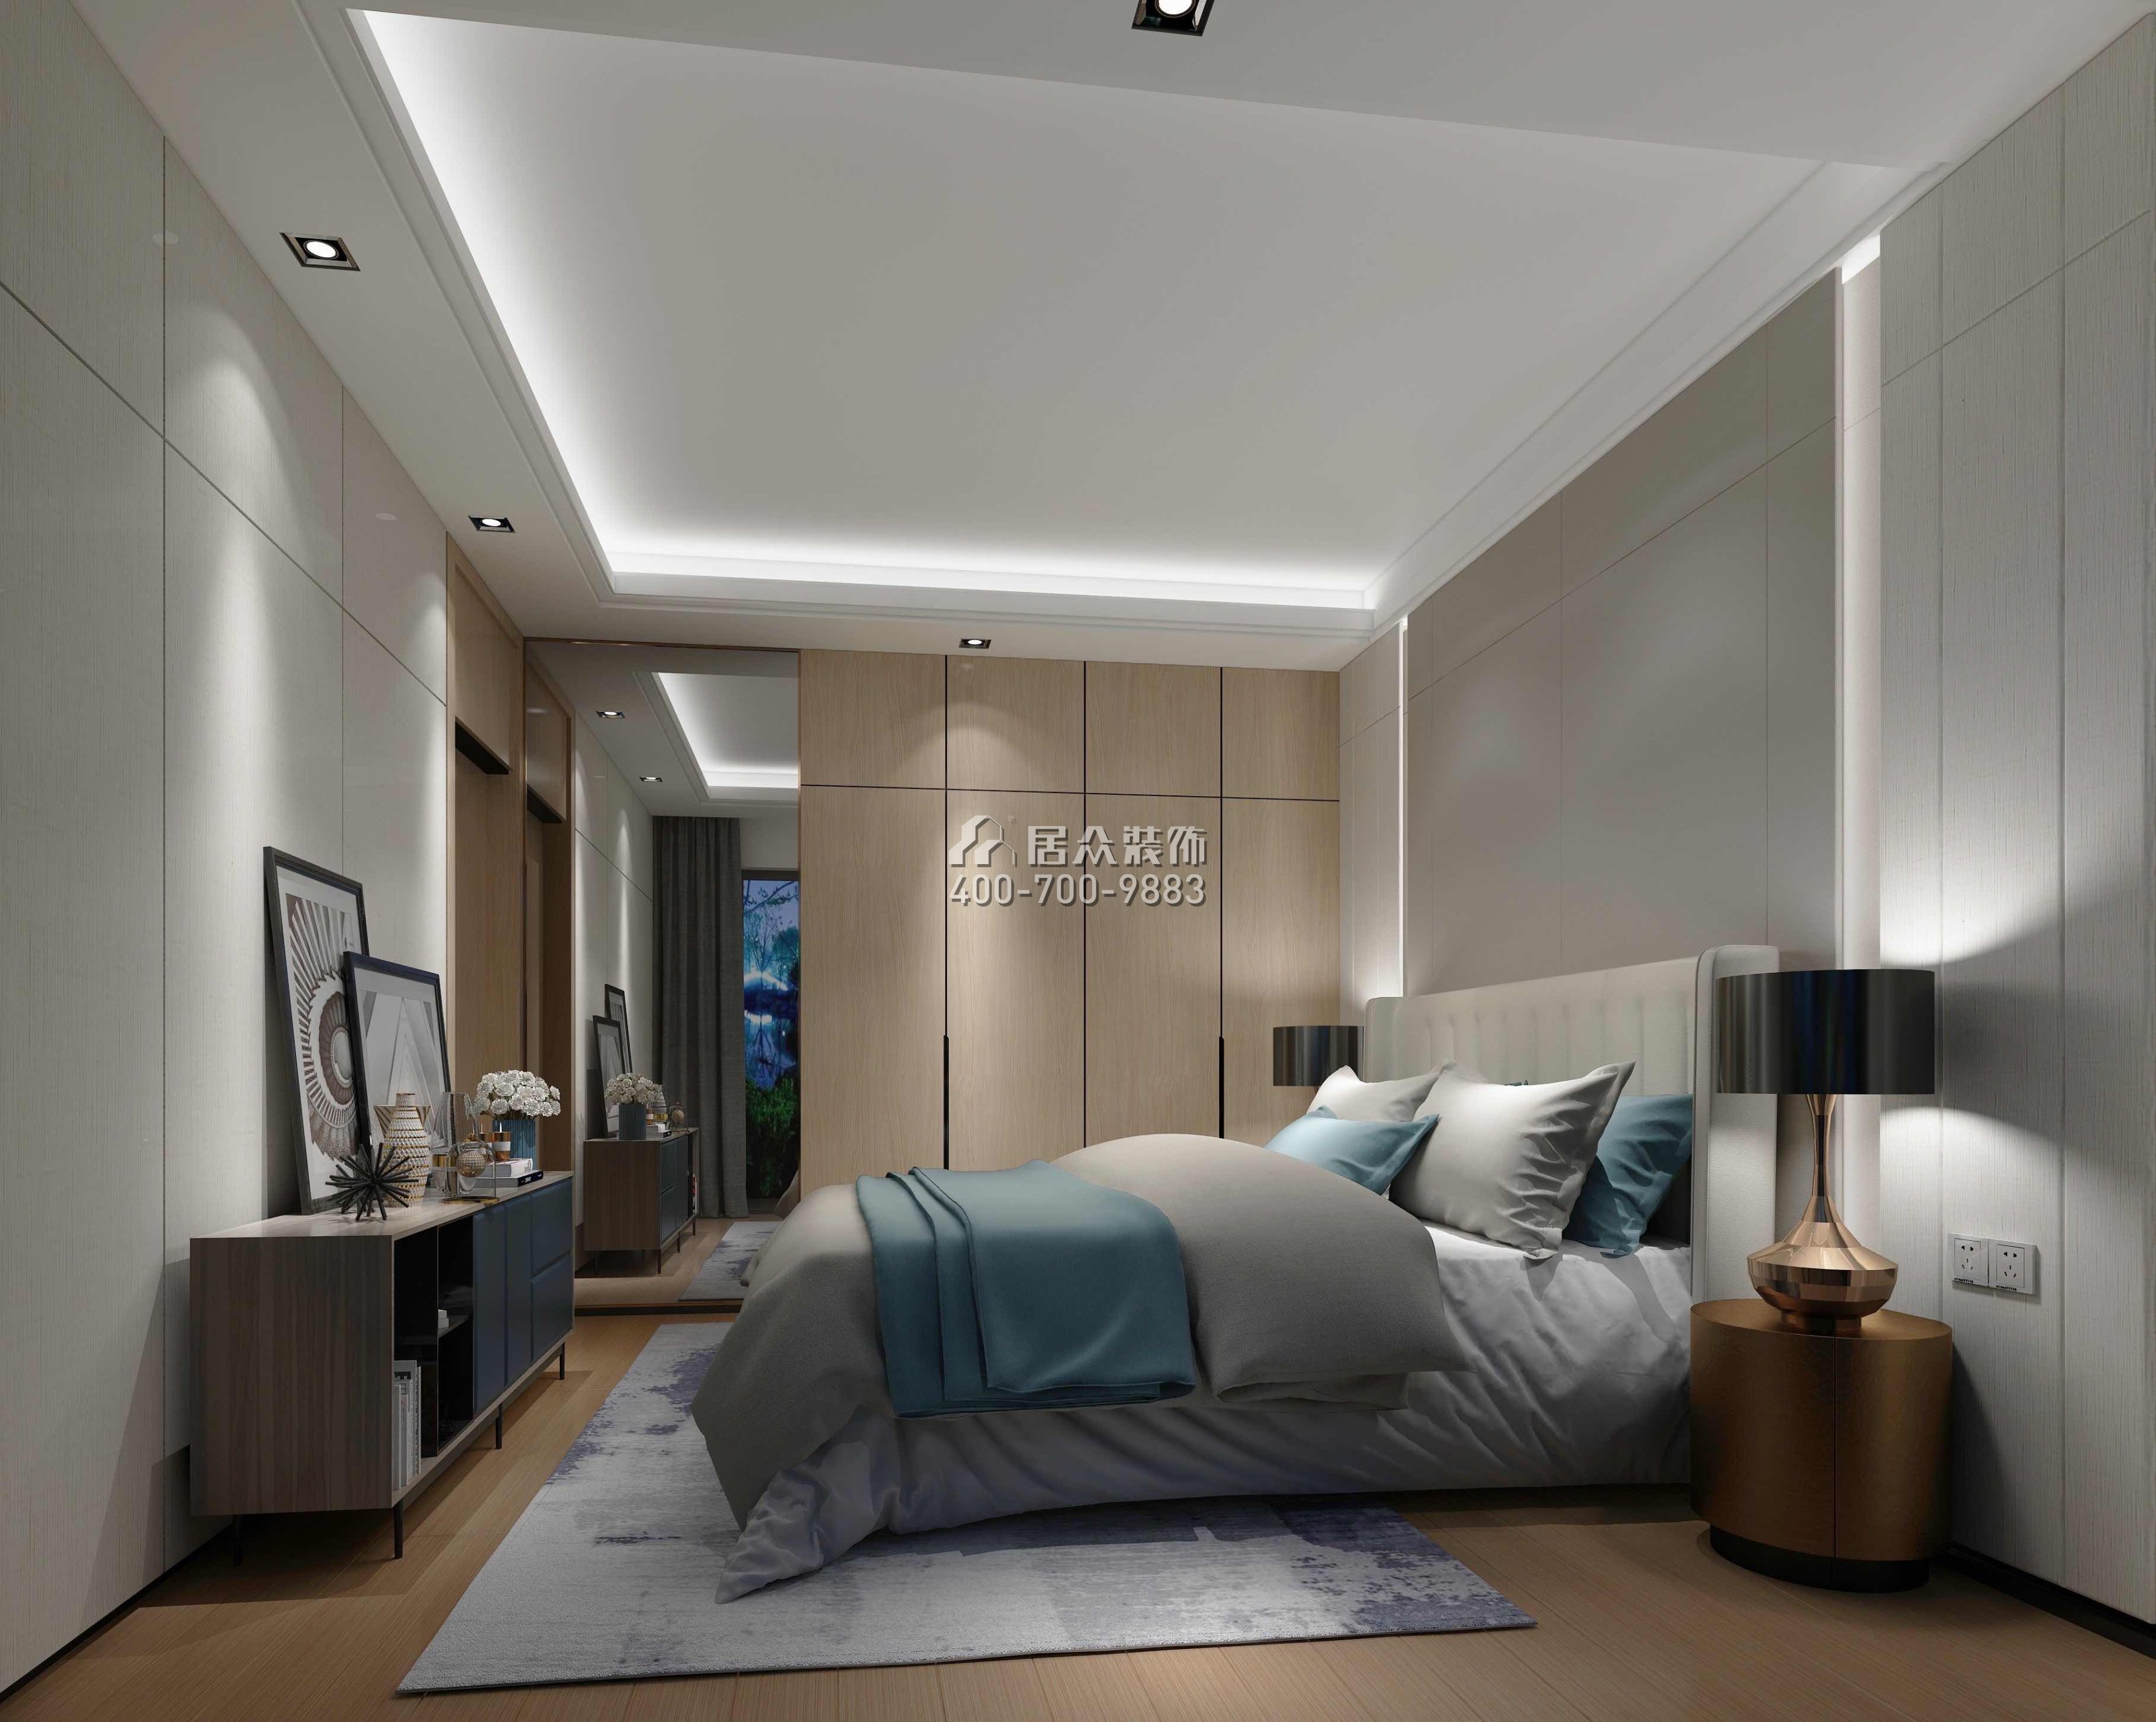 華發世紀城105平方米現代簡約風格平層戶型臥室裝修效果圖